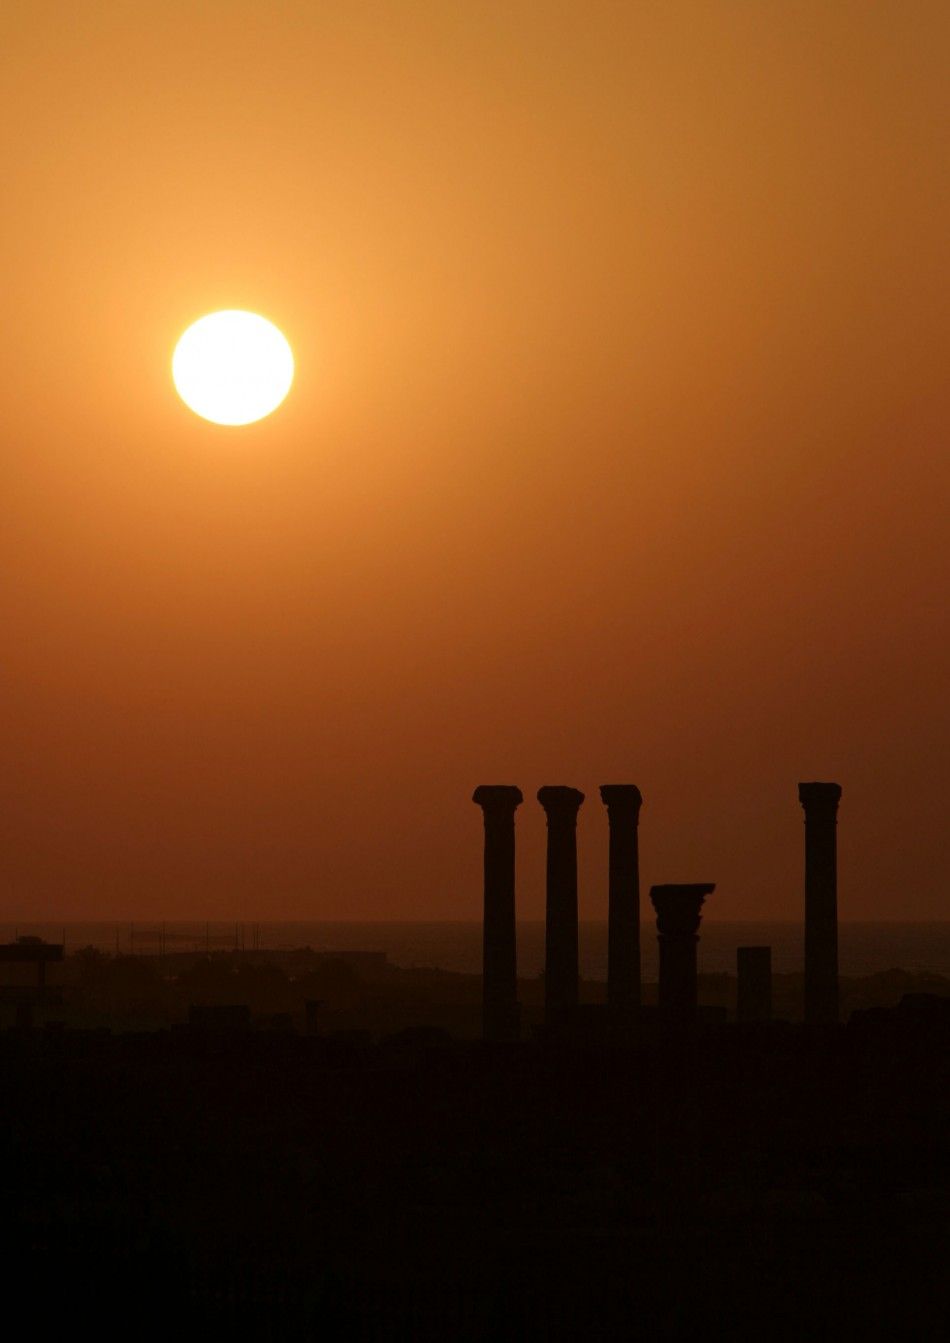 Libyas World Heritage Sites in danger